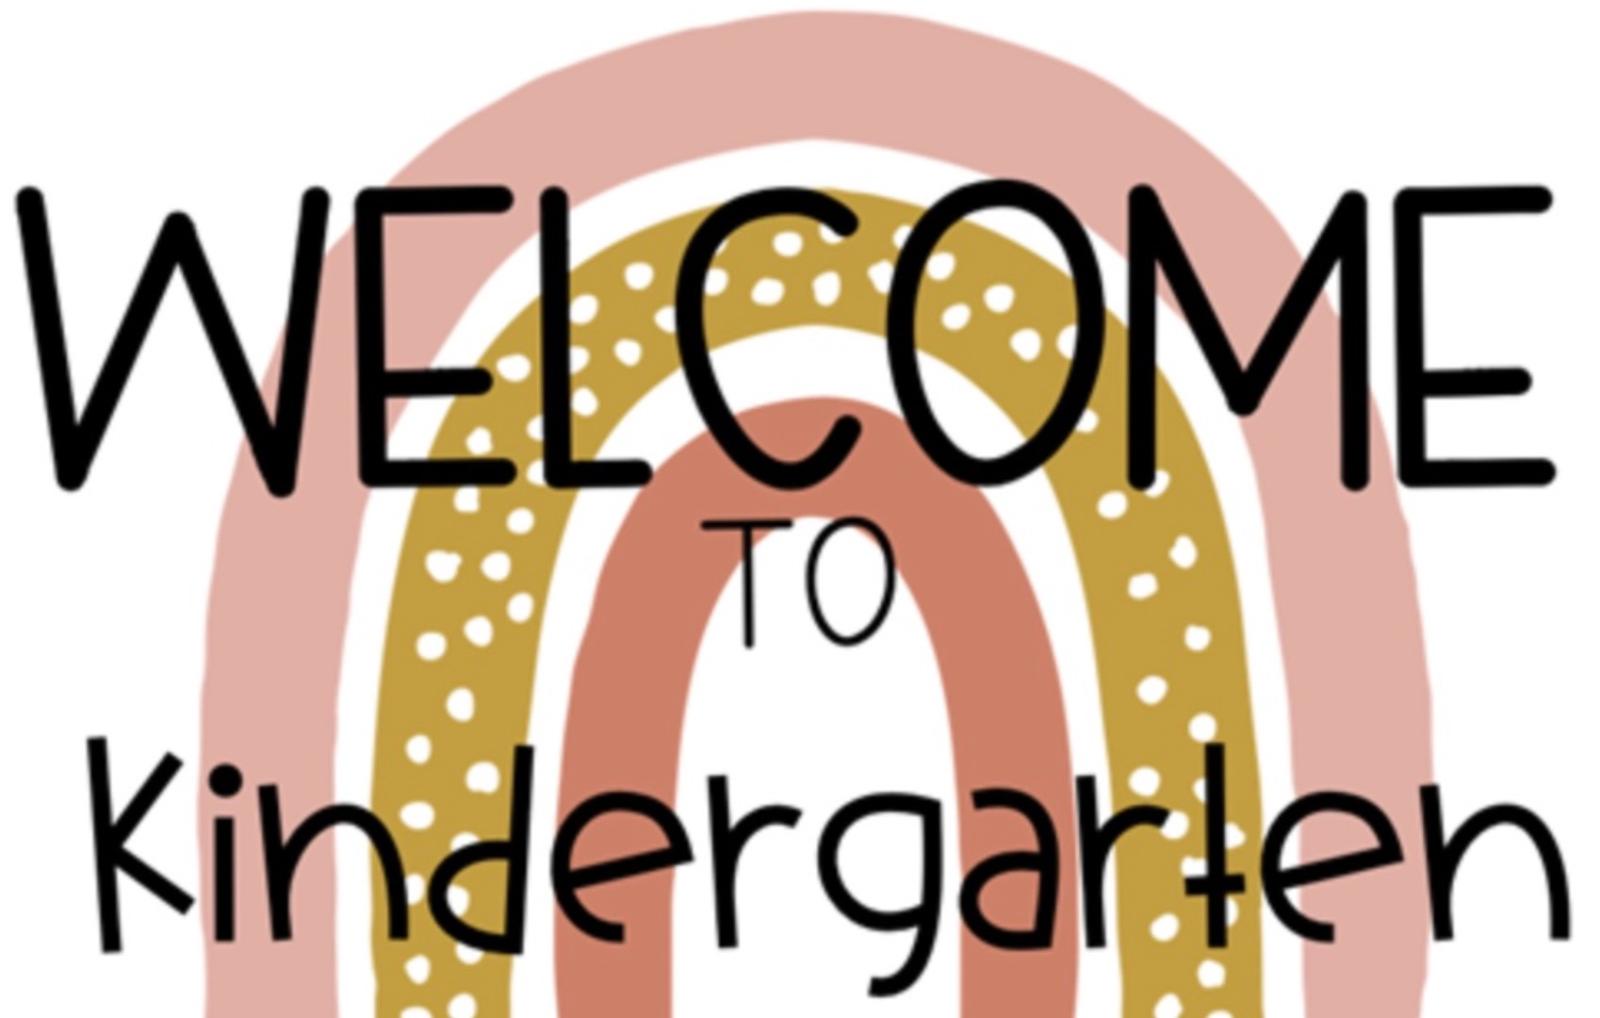 welcome to kindergarten clipart